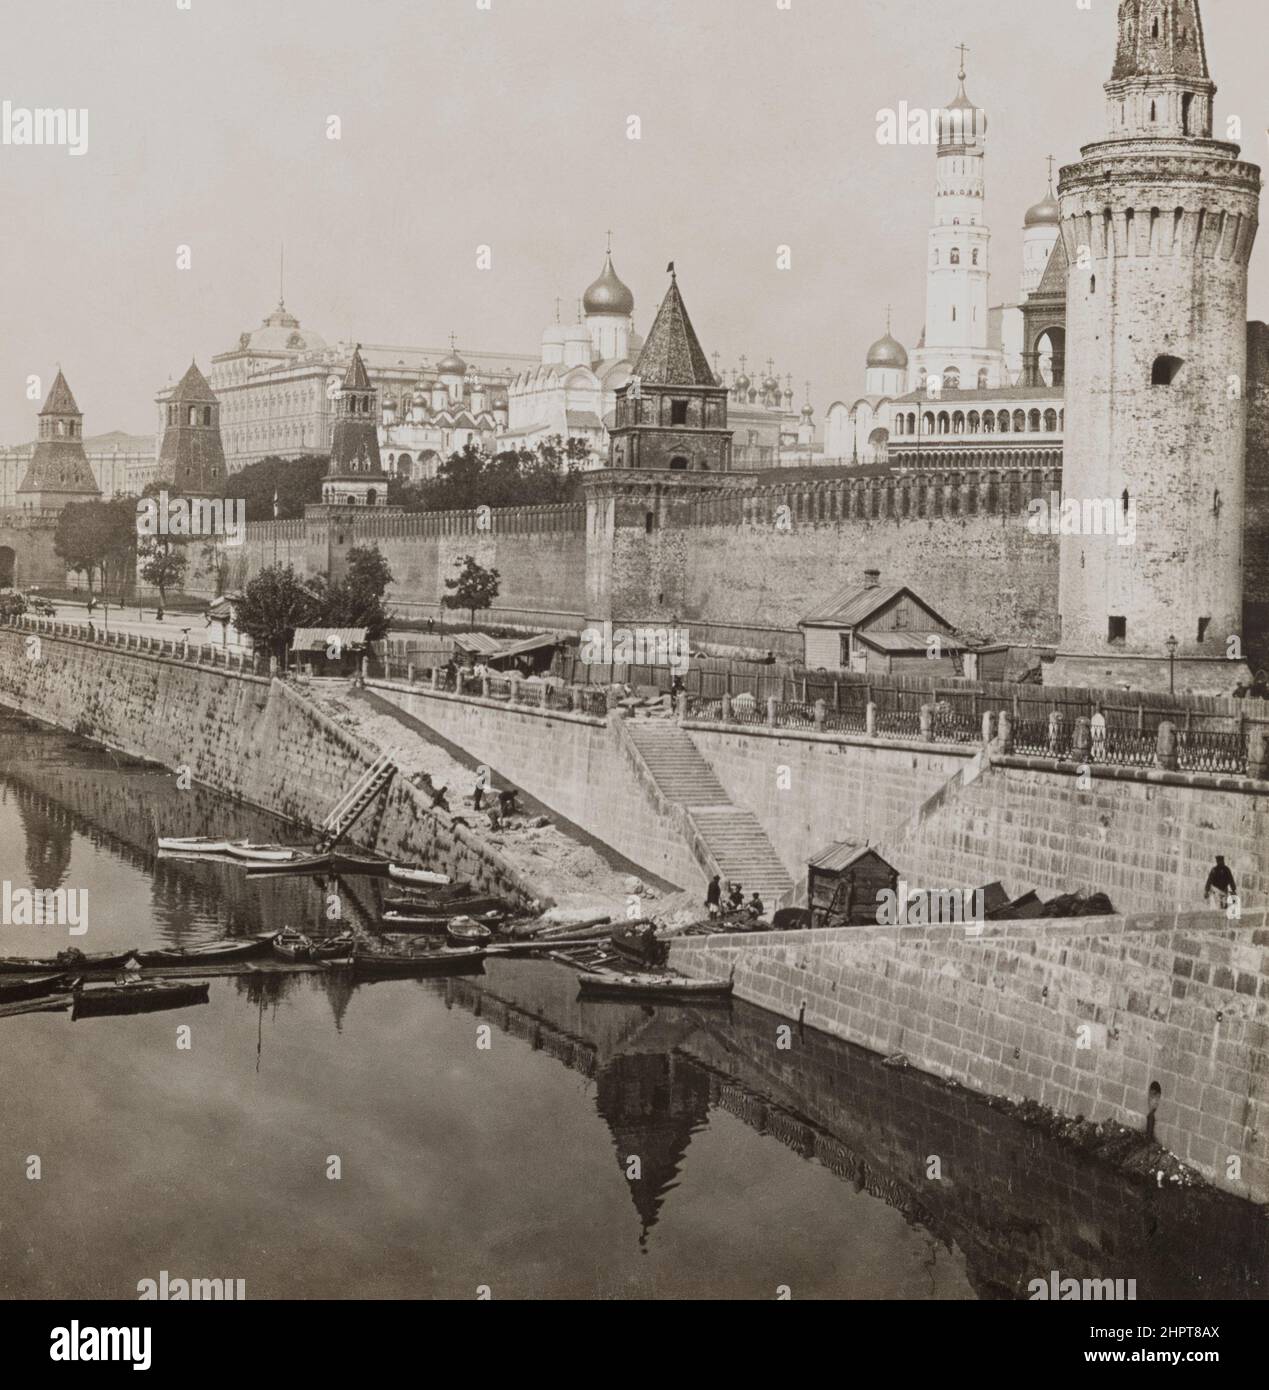 Foto vintage del Kremlin de Moscú. Imperio ruso. 1901 Foto de stock